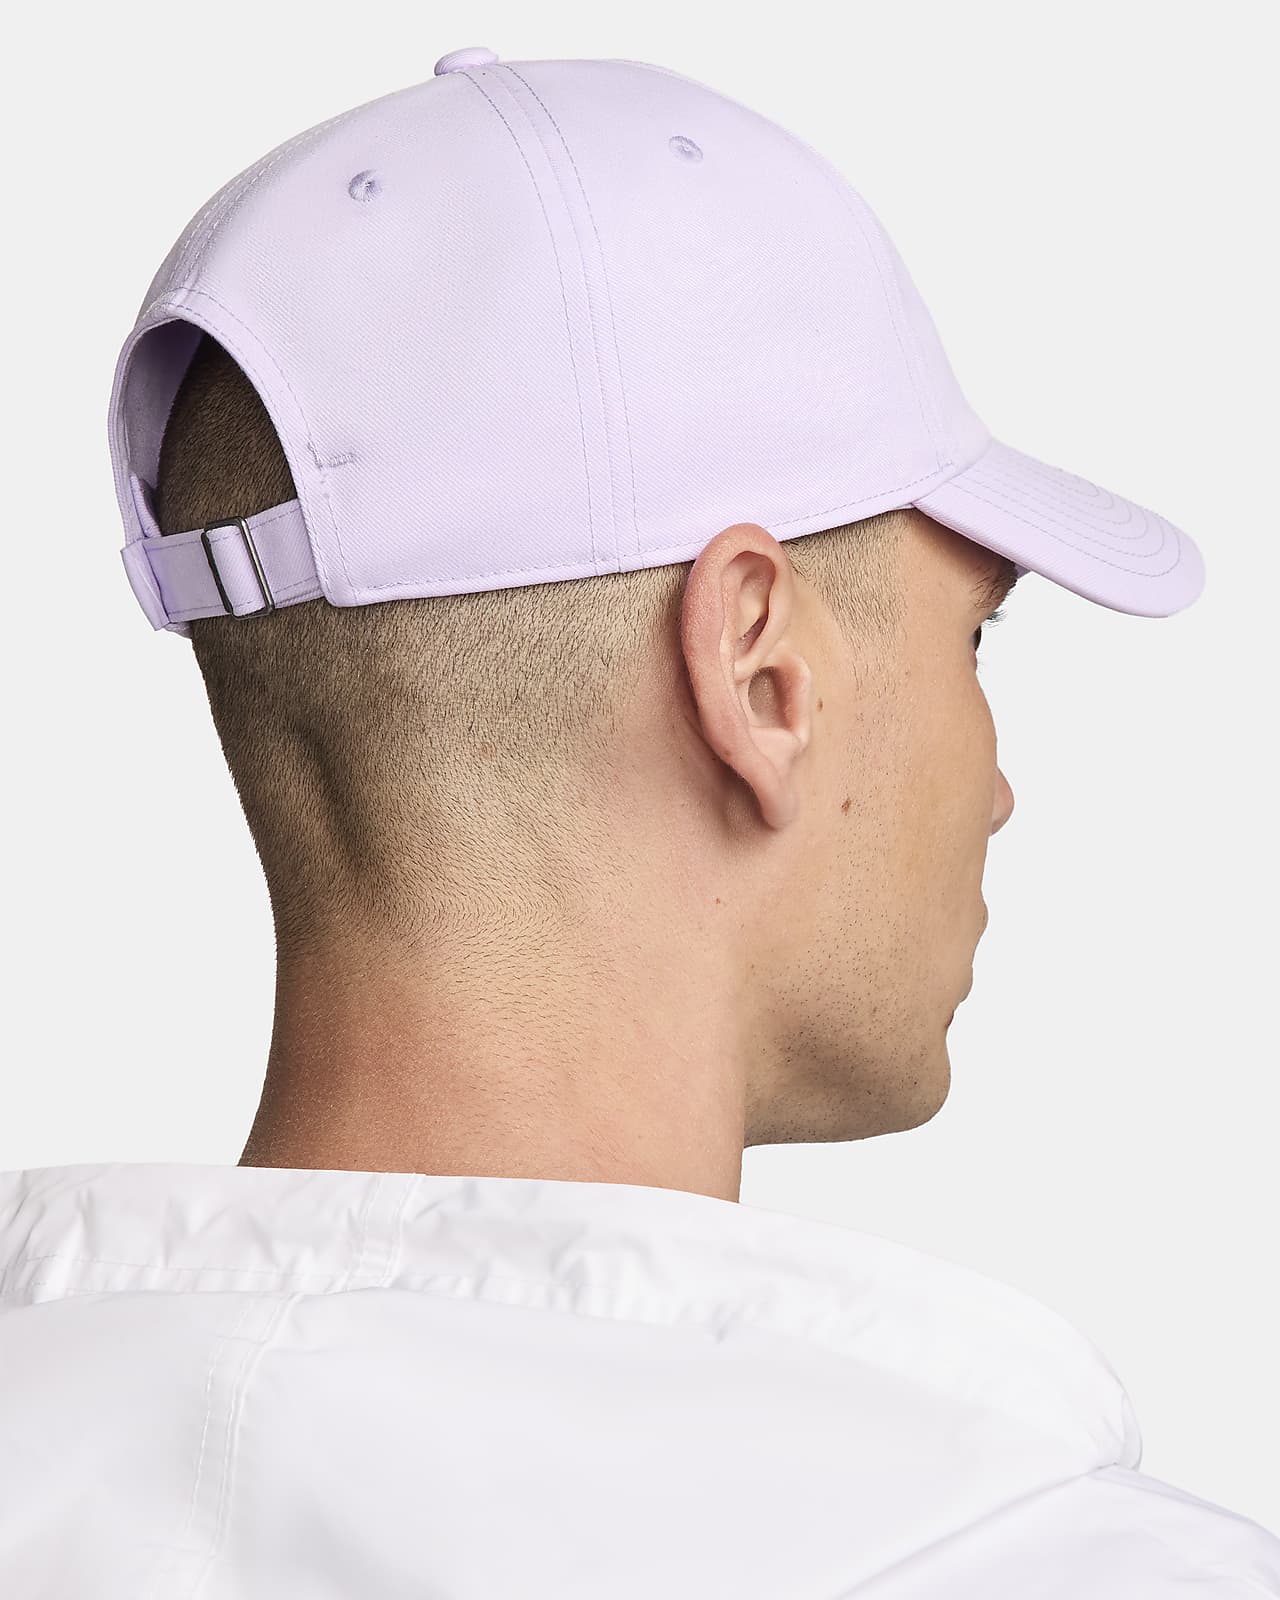 Nike metal swoosh cap in pink